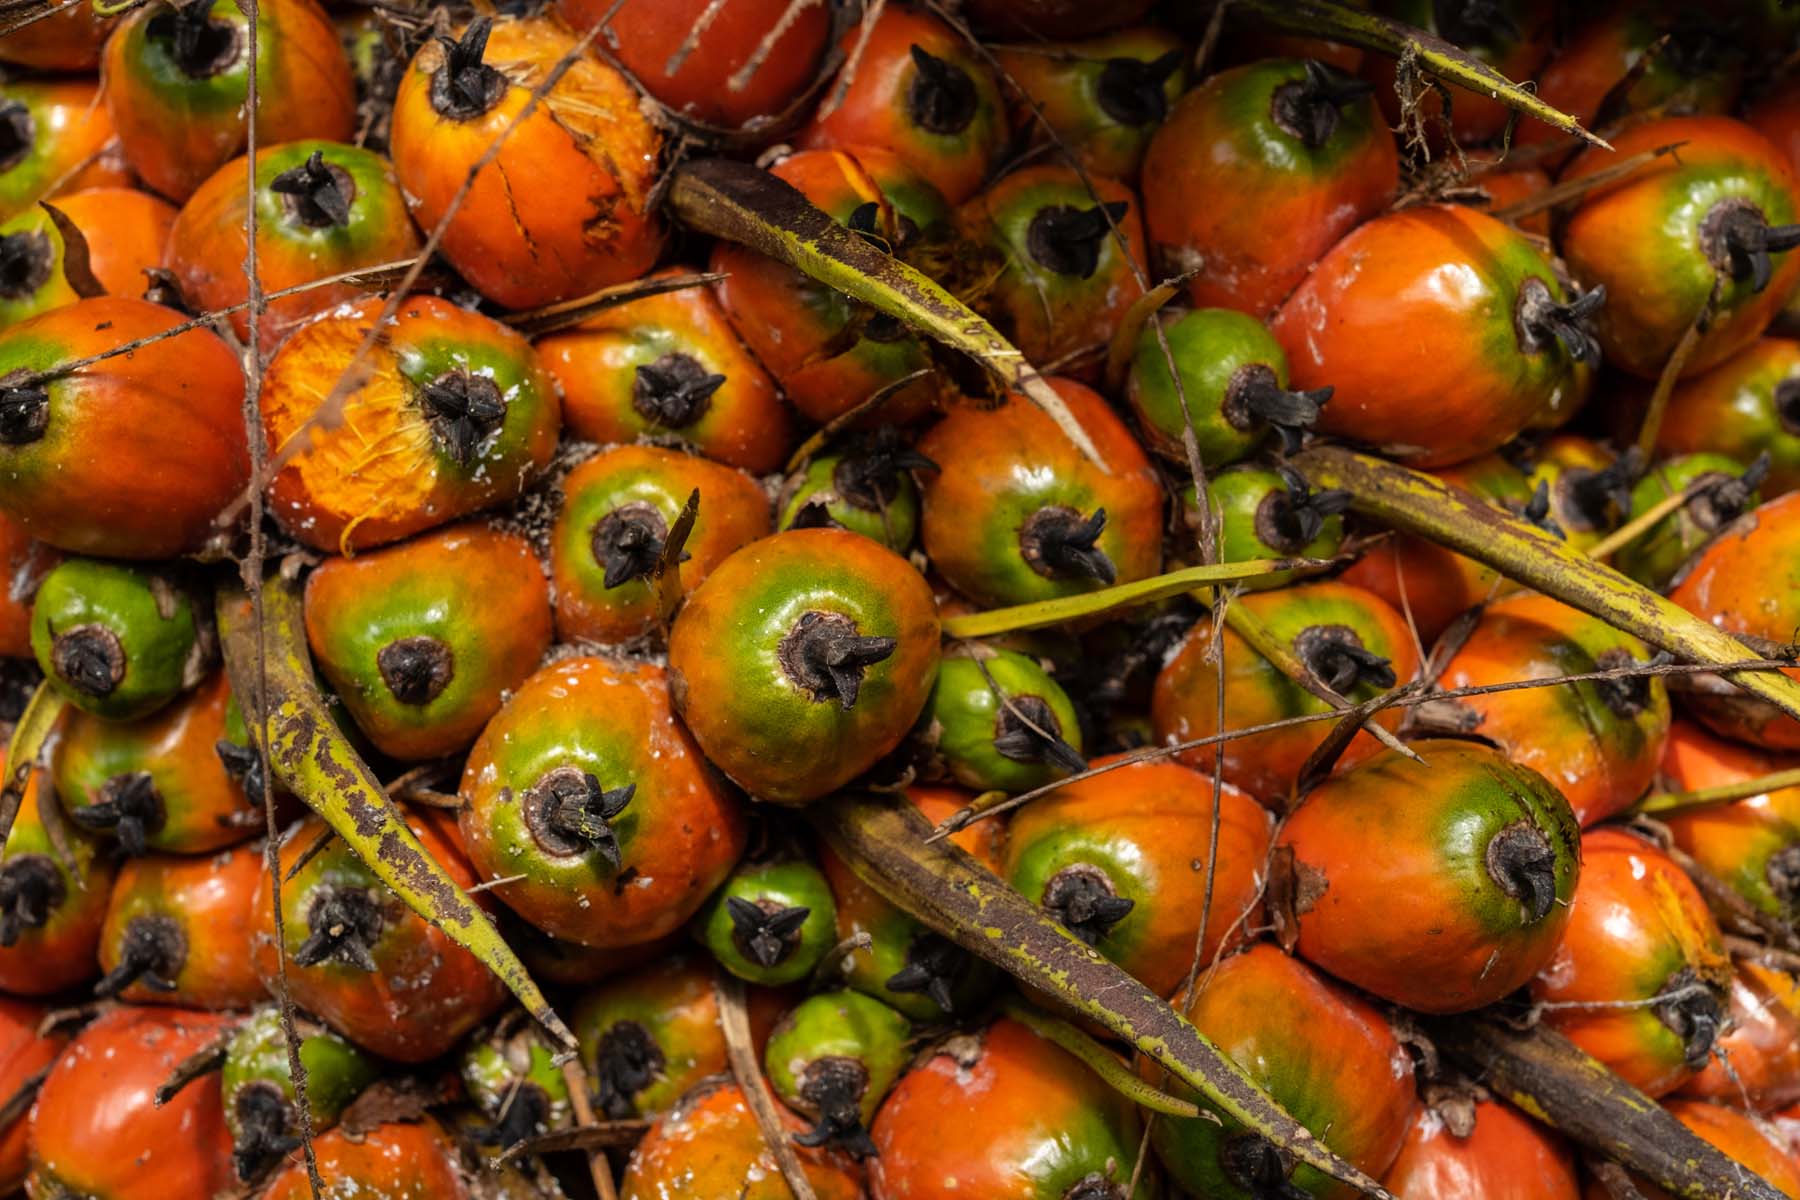 El fruto de la palma se procesa para obtener el aceite que se usa en diversas industrias. Foto: Isabel Mateos.